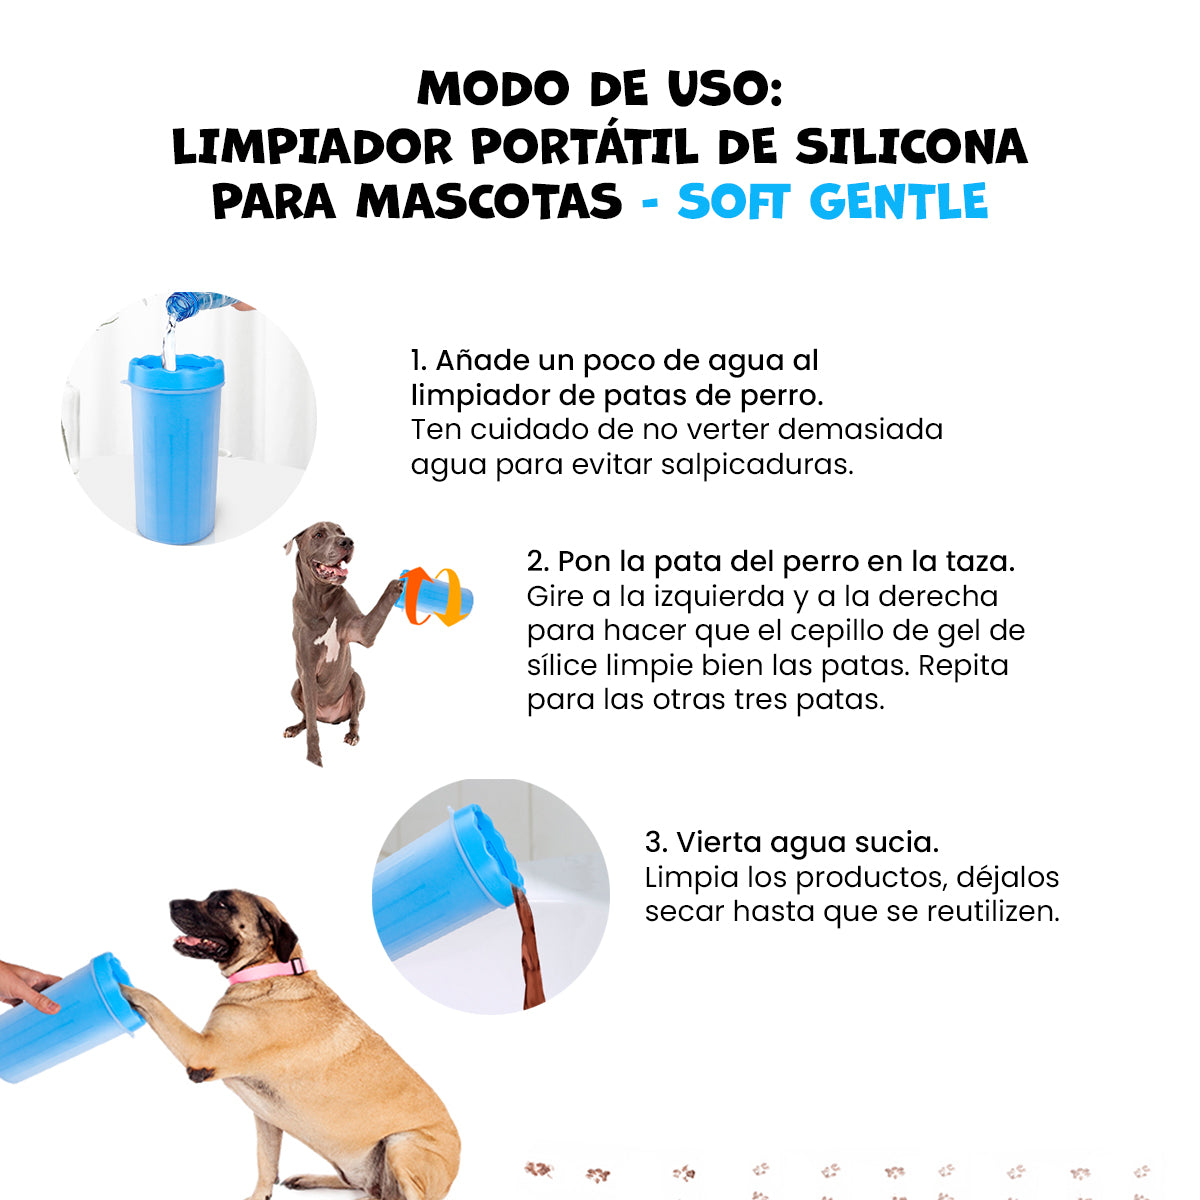 Limpiador portátil de silicona para mascotas Verde - Soft gentle